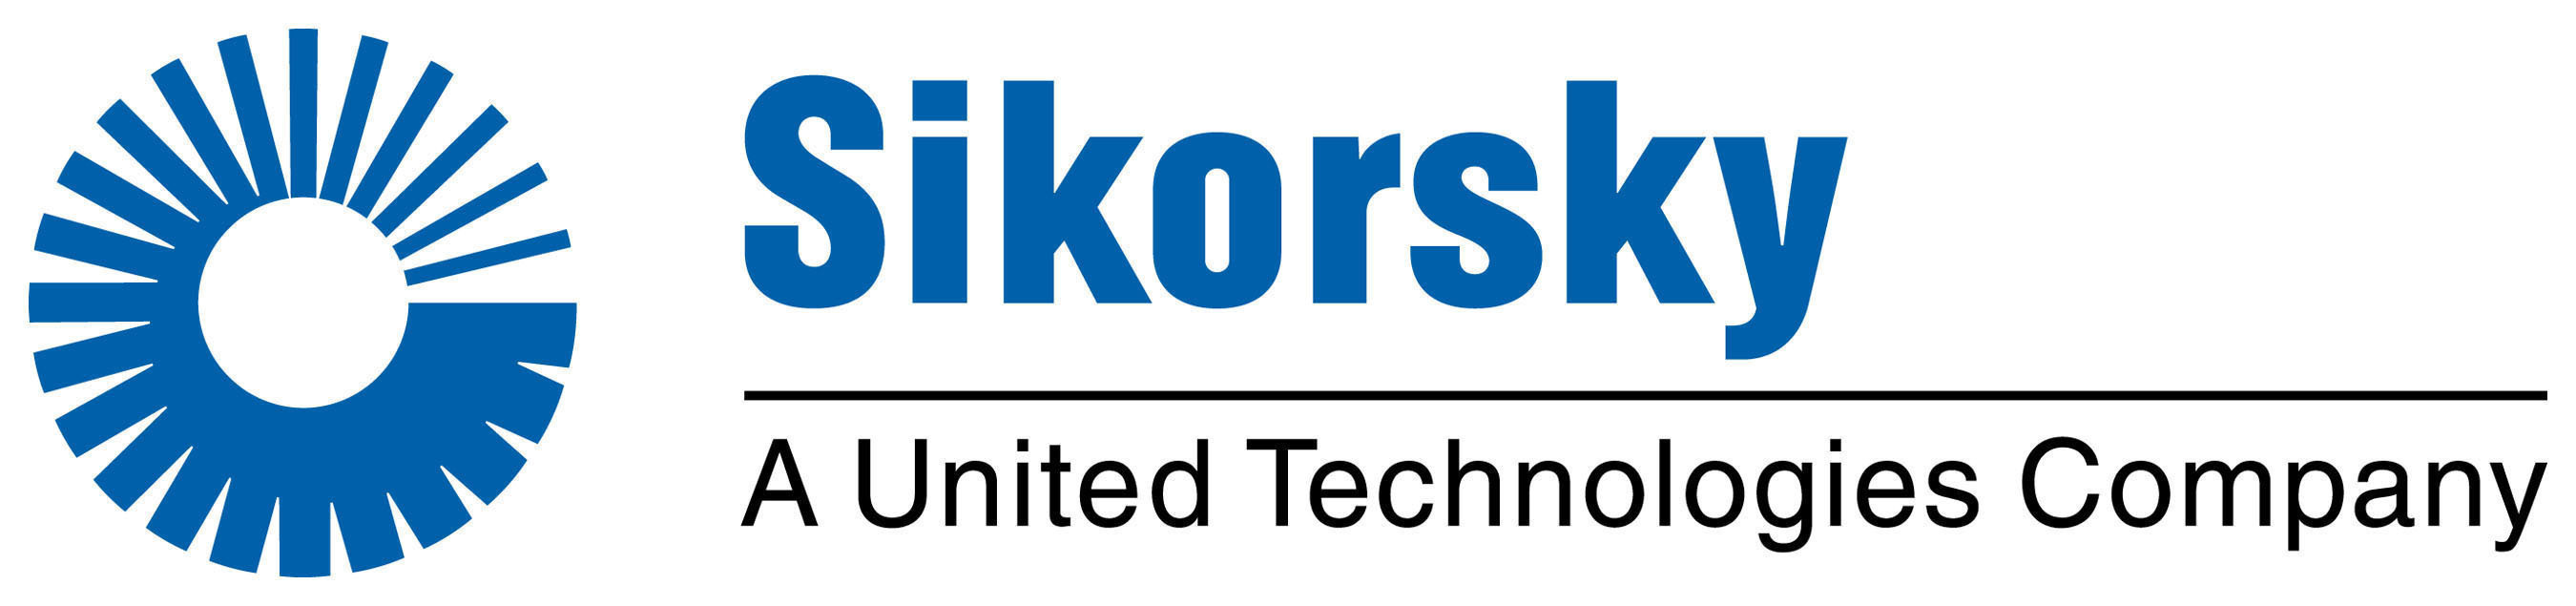 Sikorsky Logo.